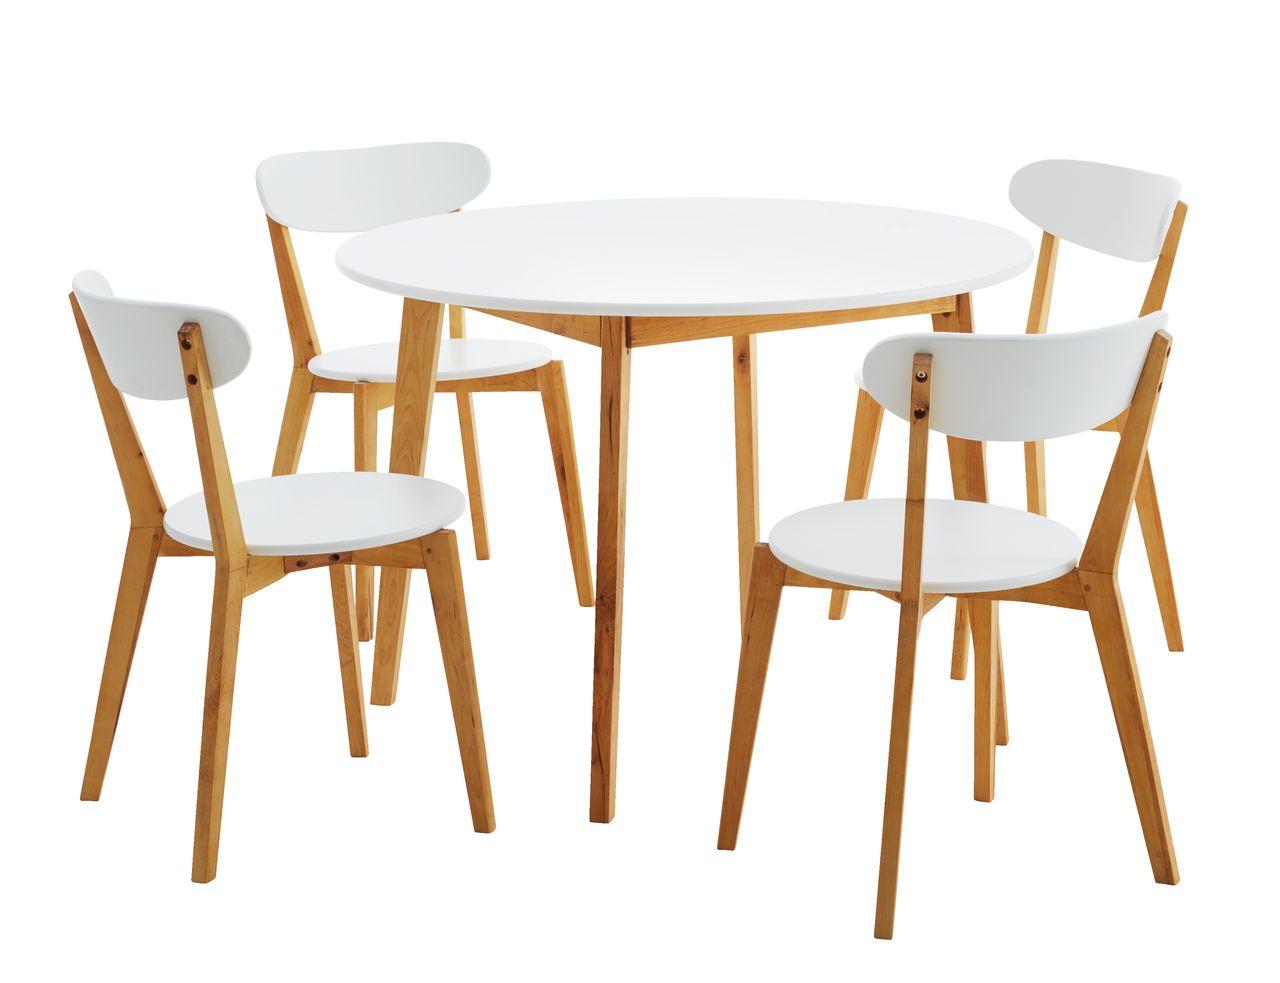 Обеденный комплект стол стулья. JYSK Jegind стул. Набор мебели (стол + 4 стула) Вайт бел.. JYSK стол обеденный. Стол JYSK круглый обеденный.